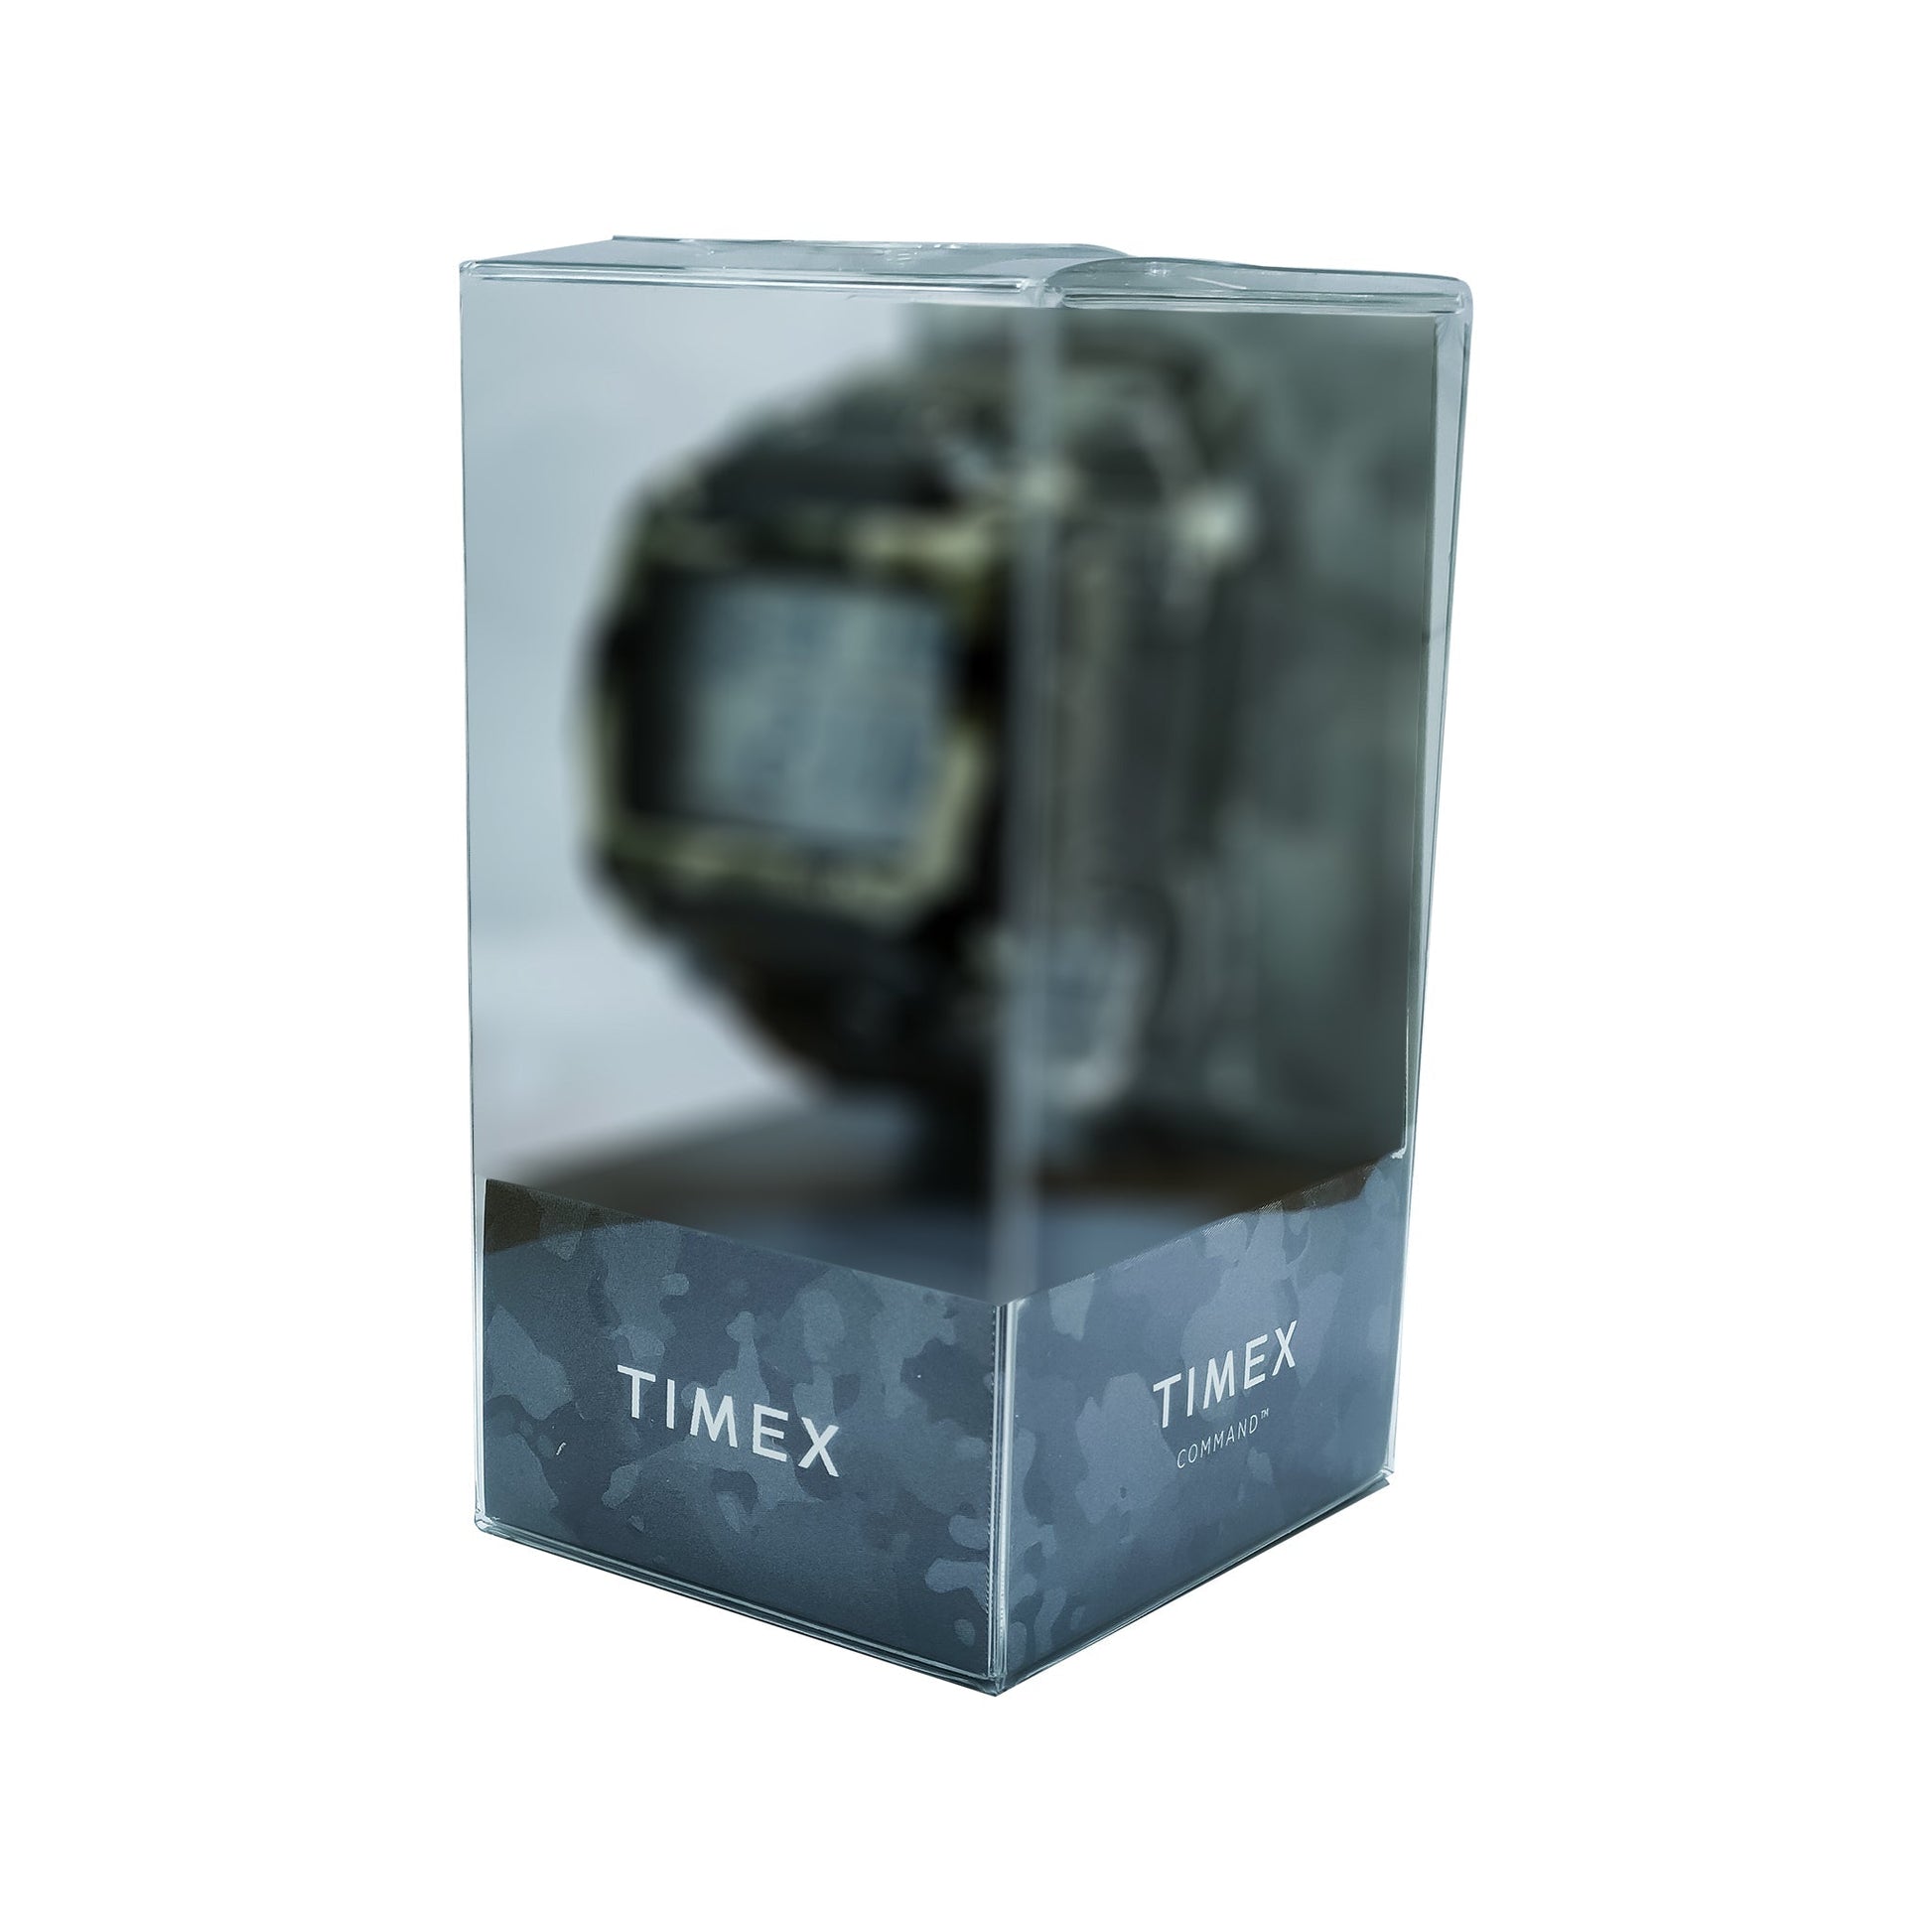 TW5M28700 TIMEX Men's Watch